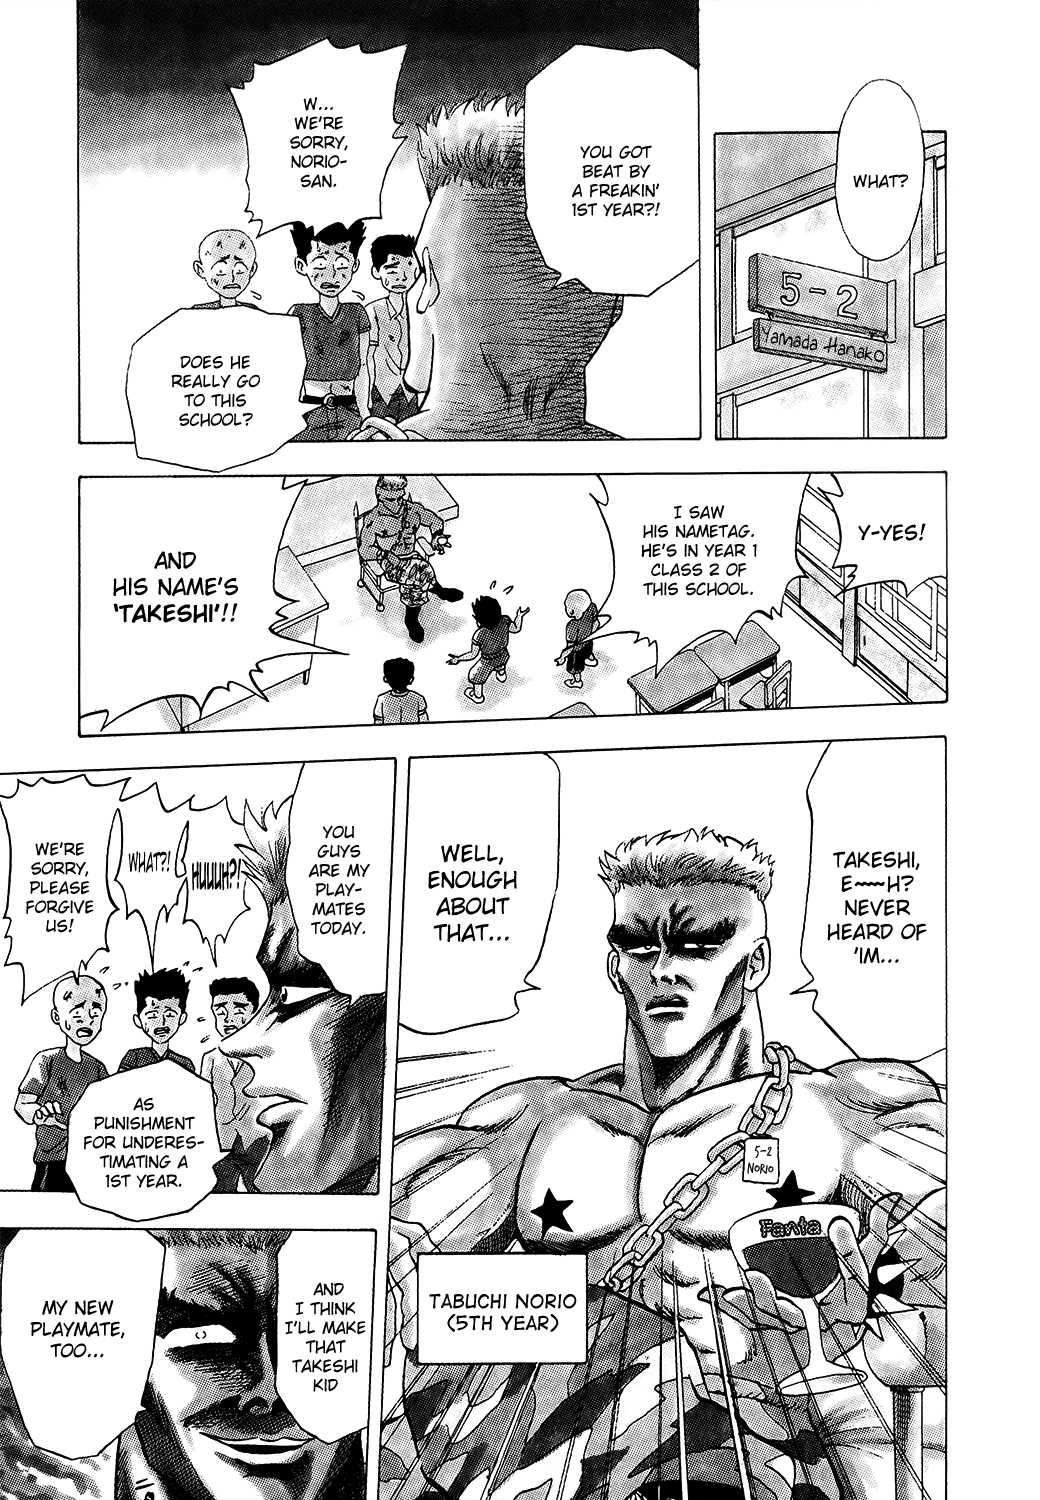 Seikimatsu Leader Den Takeshi! Vol.1 Ch.1